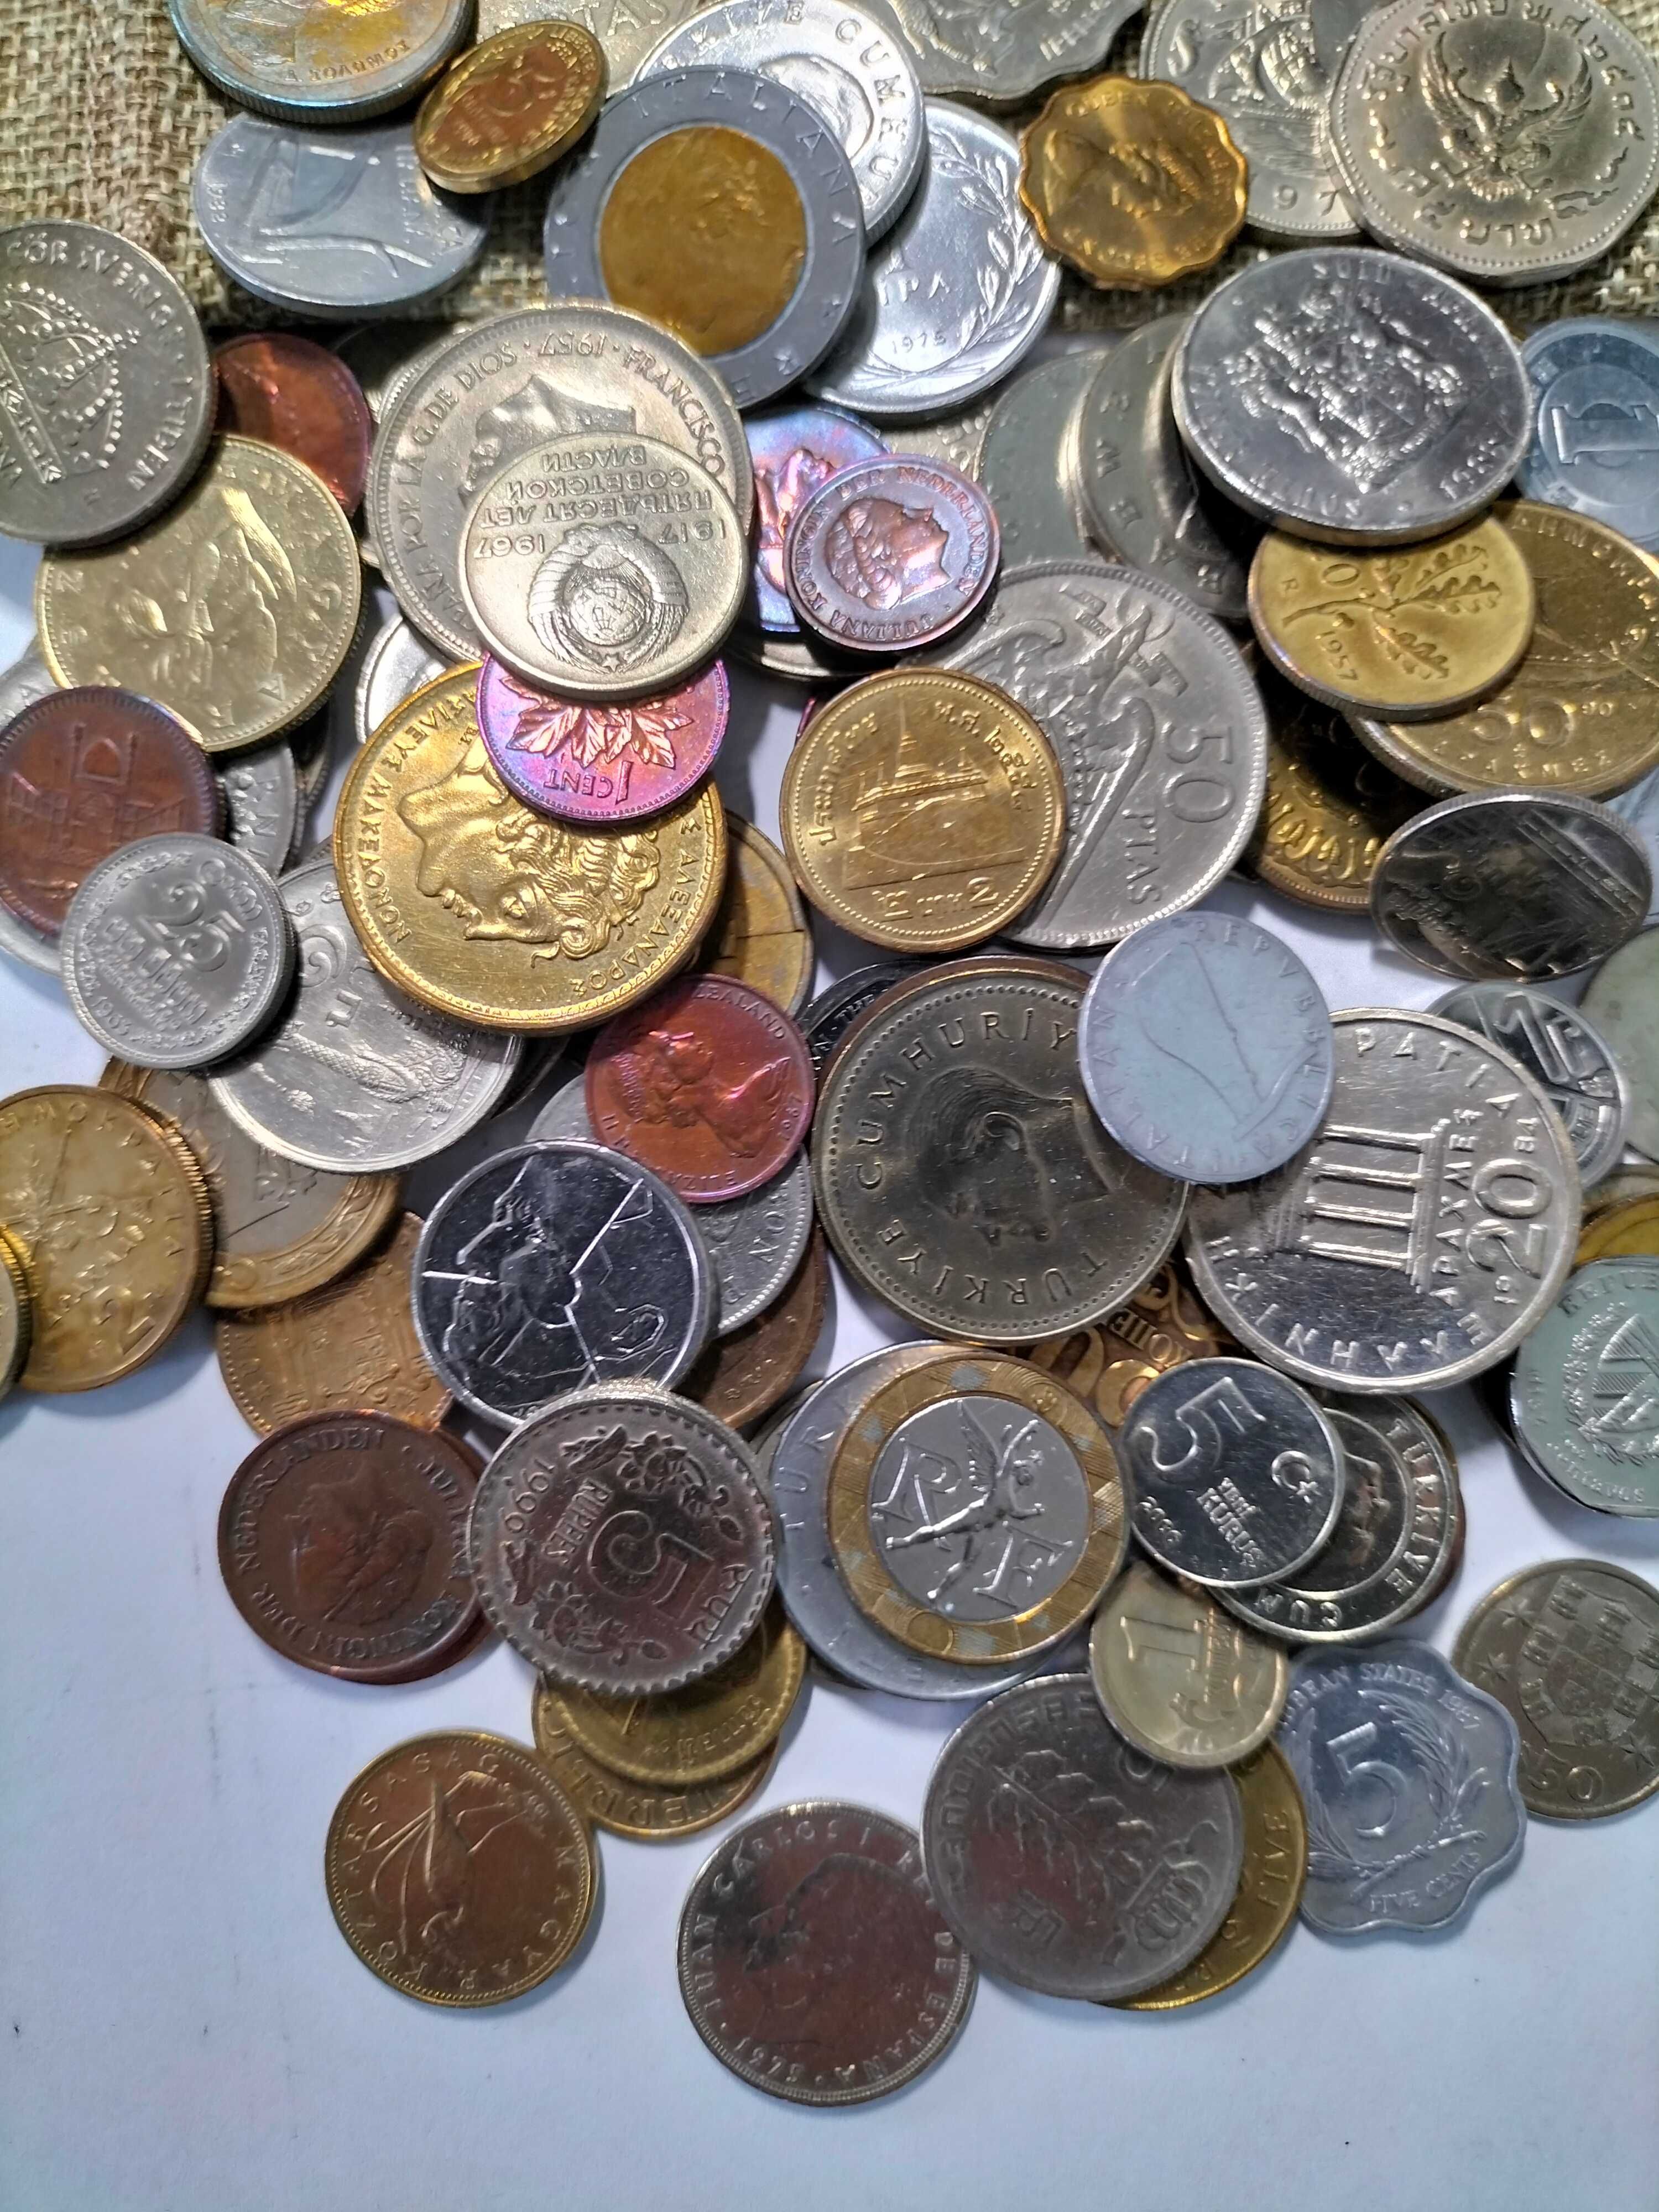 100 moedas diferentes de 40 países. Um bom começo para a coleção.